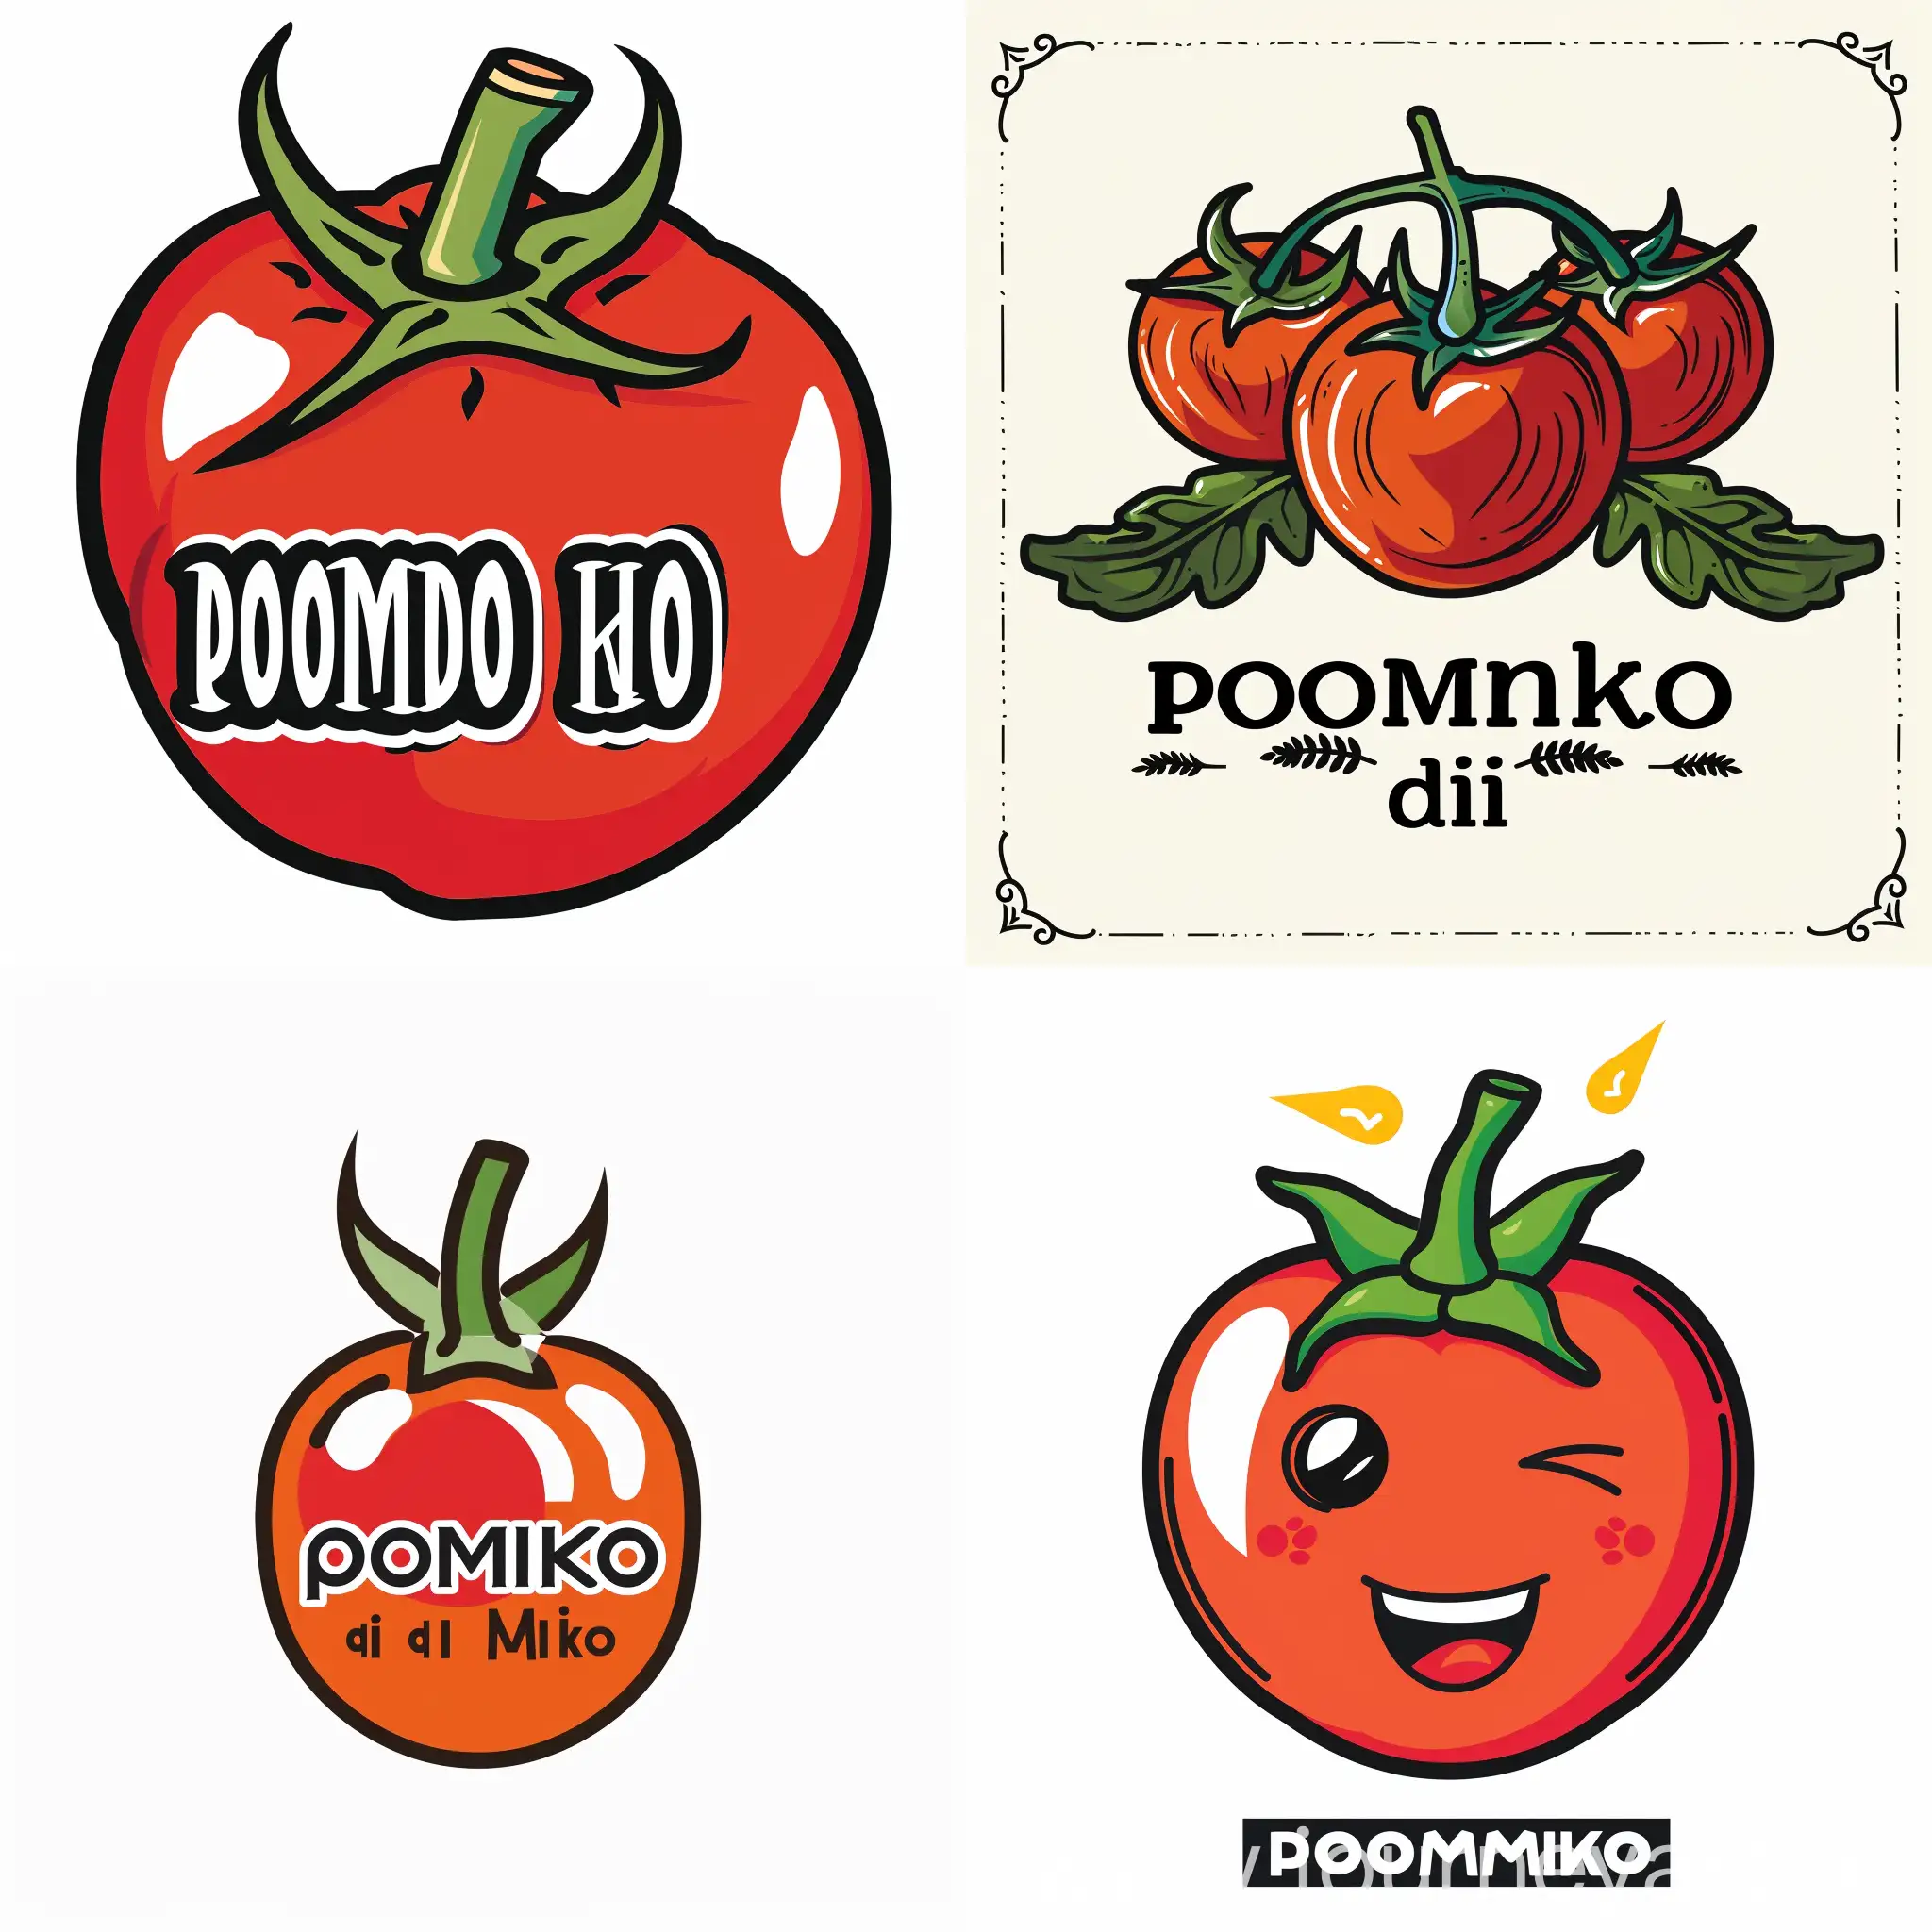 Pomodoro-di-Miko-Logo-Design-Vibrant-and-Symmetrical-Tomato-Clock-Illustration